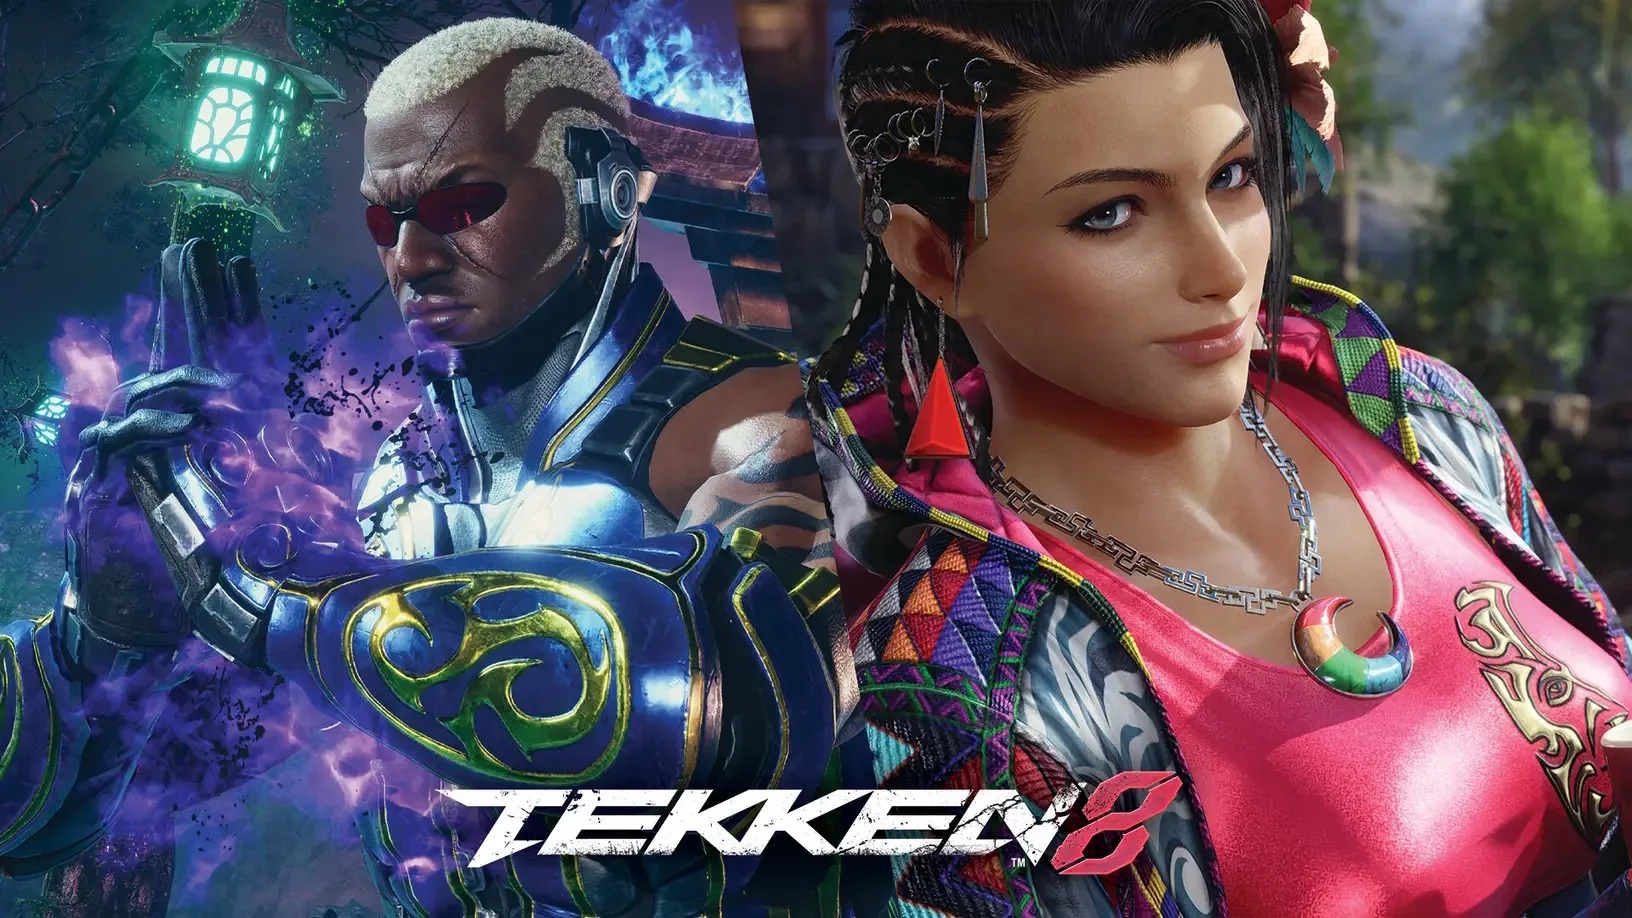 Tekken 8 adds newcomer Reina - Gematsu